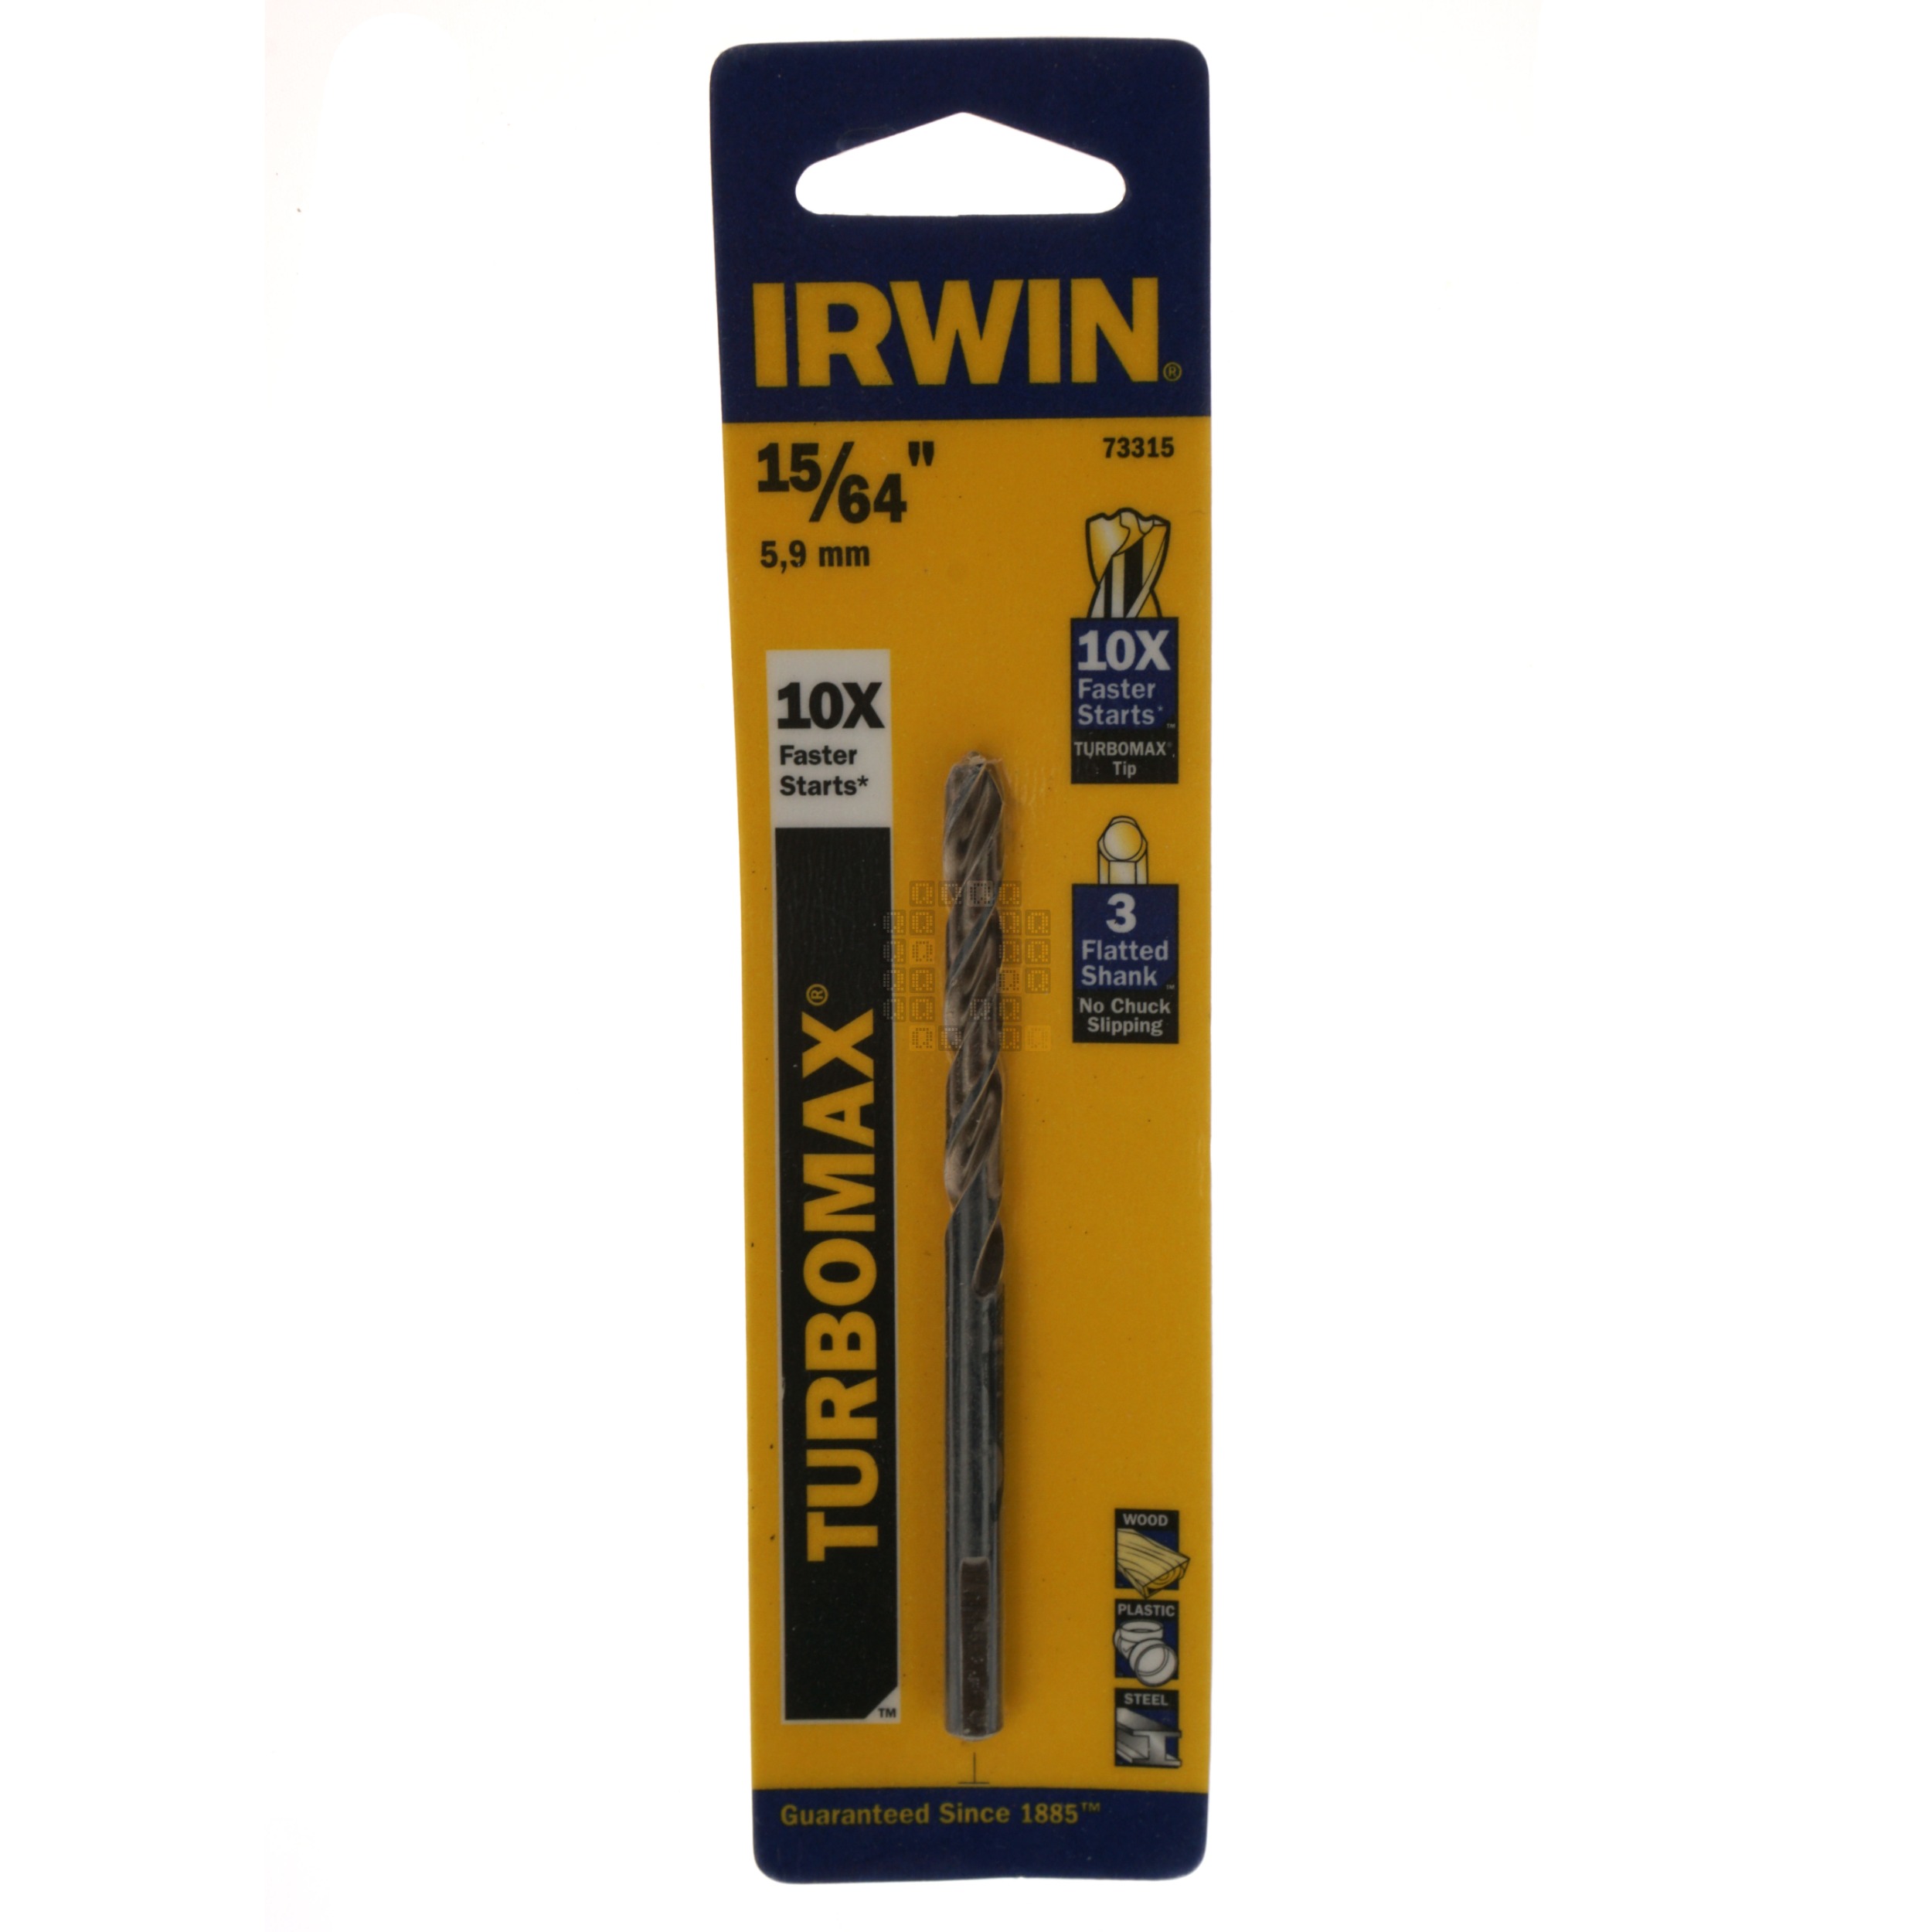 Irwin Industrial Tools 73315 Turbomax 15/64" Drill Bit